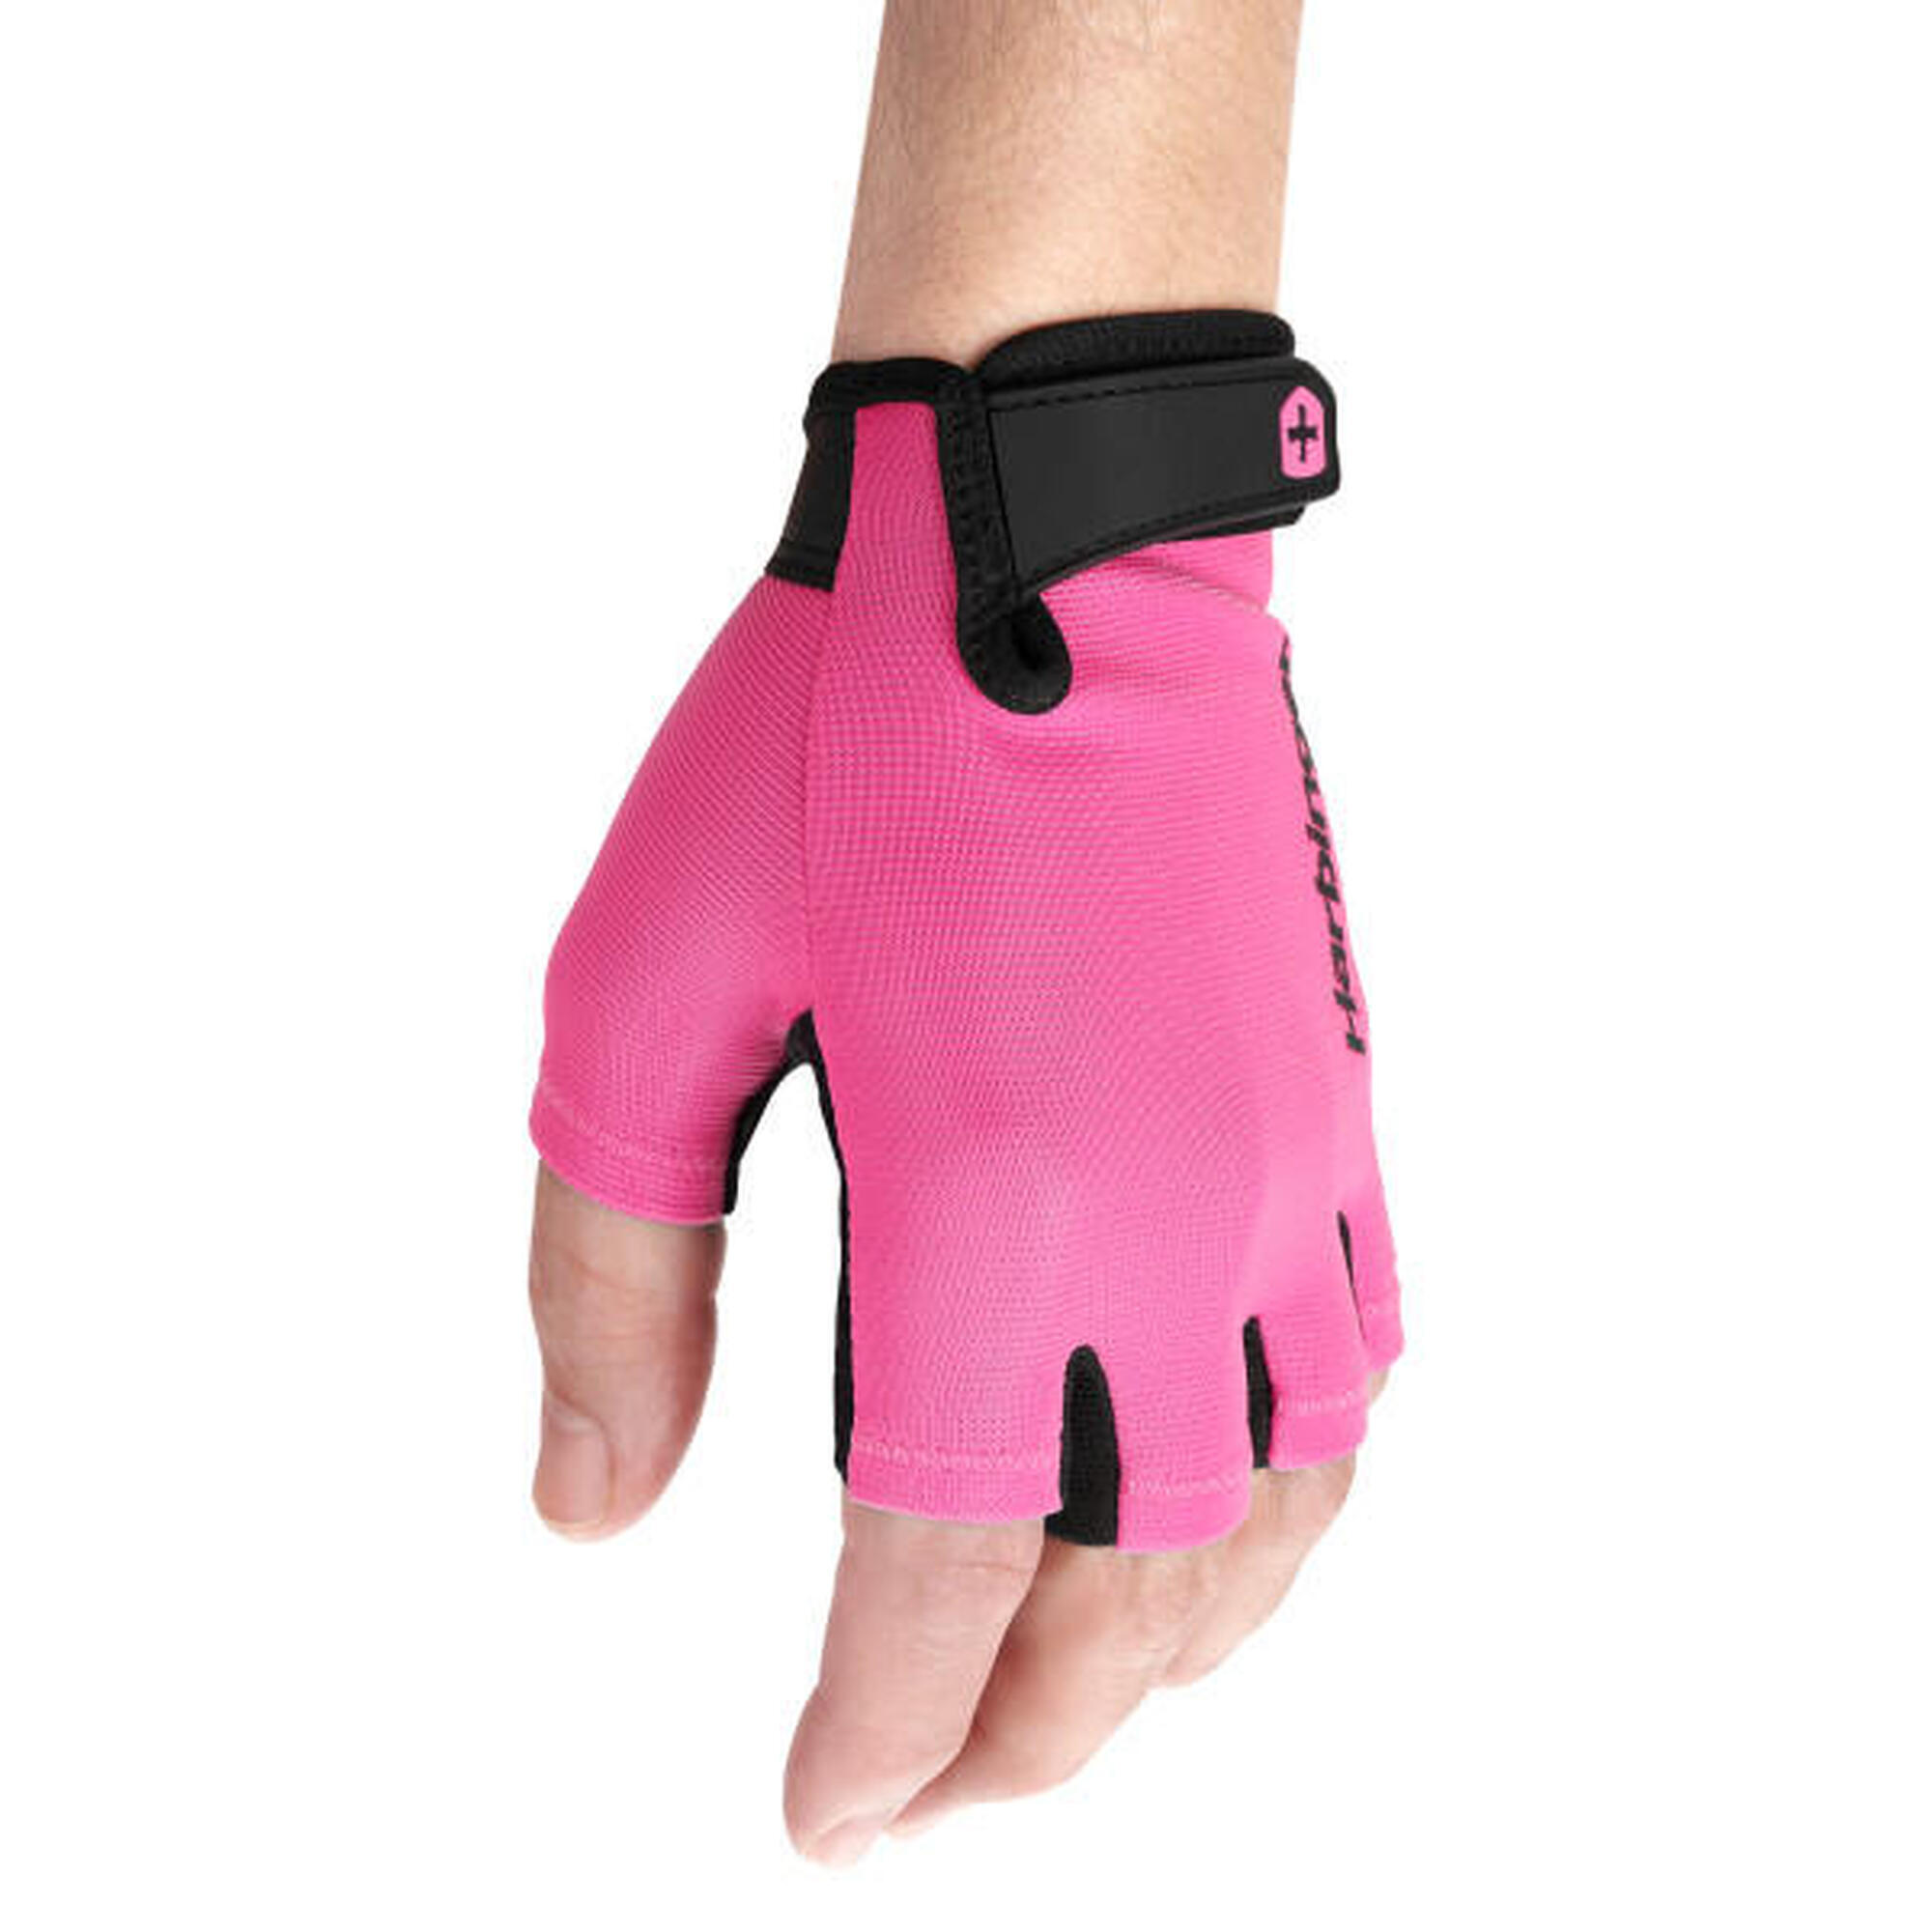 Gant d'haltérophilie rose pour femme pour un confort d'entraînement Taille S